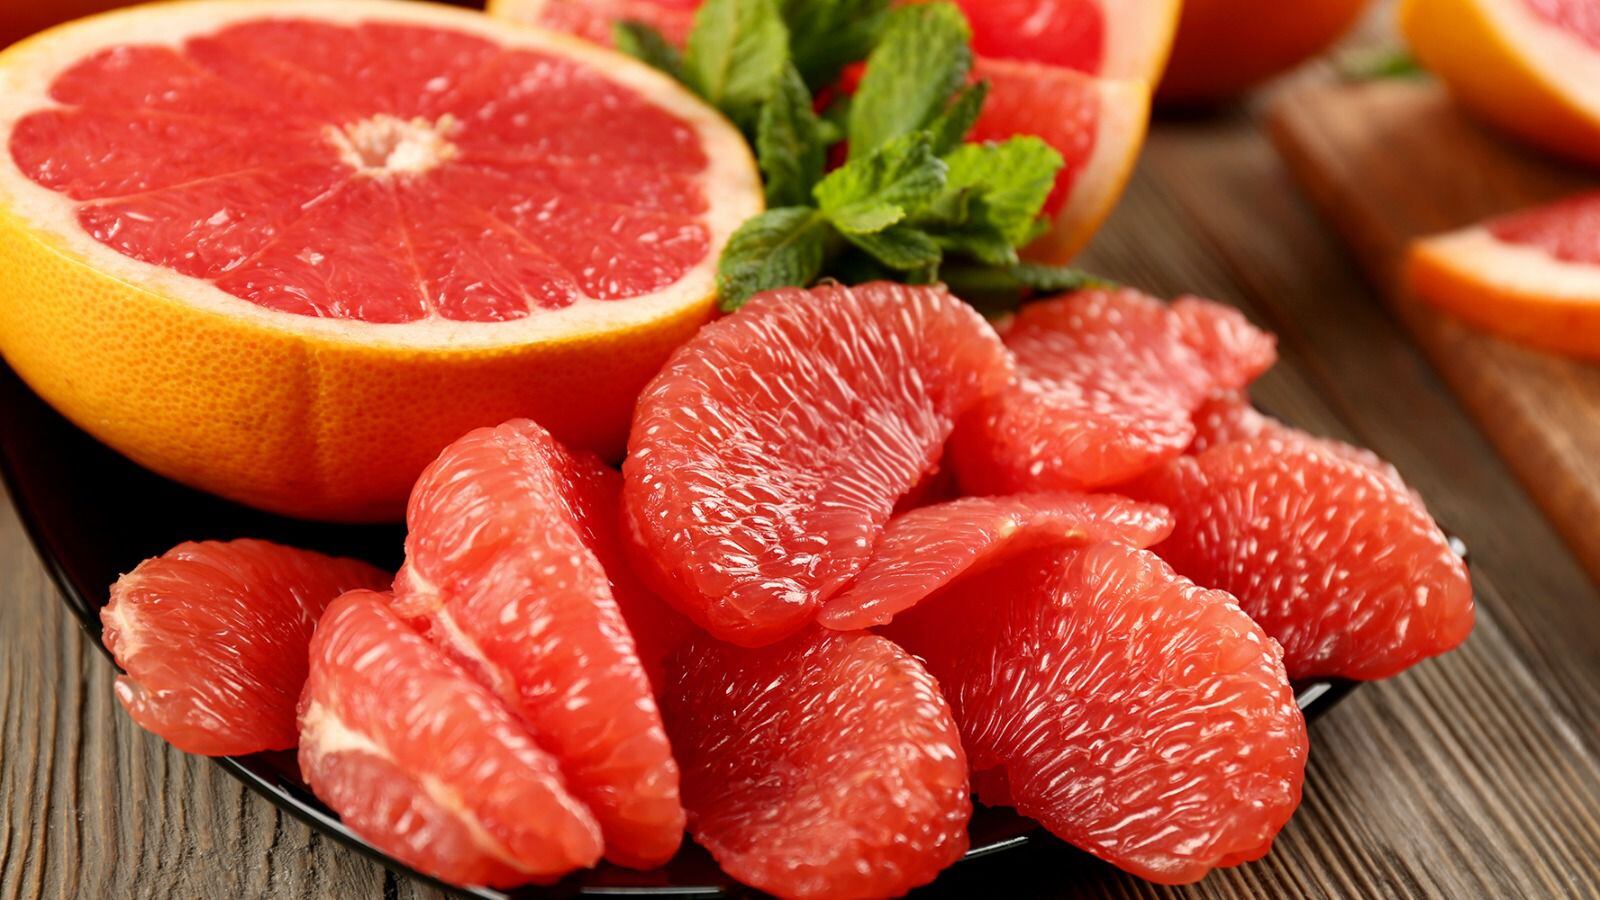 La toronja tiene vitaminas y nutrientes que evitan algunos padecimientos. (Foto: Shutterstock)